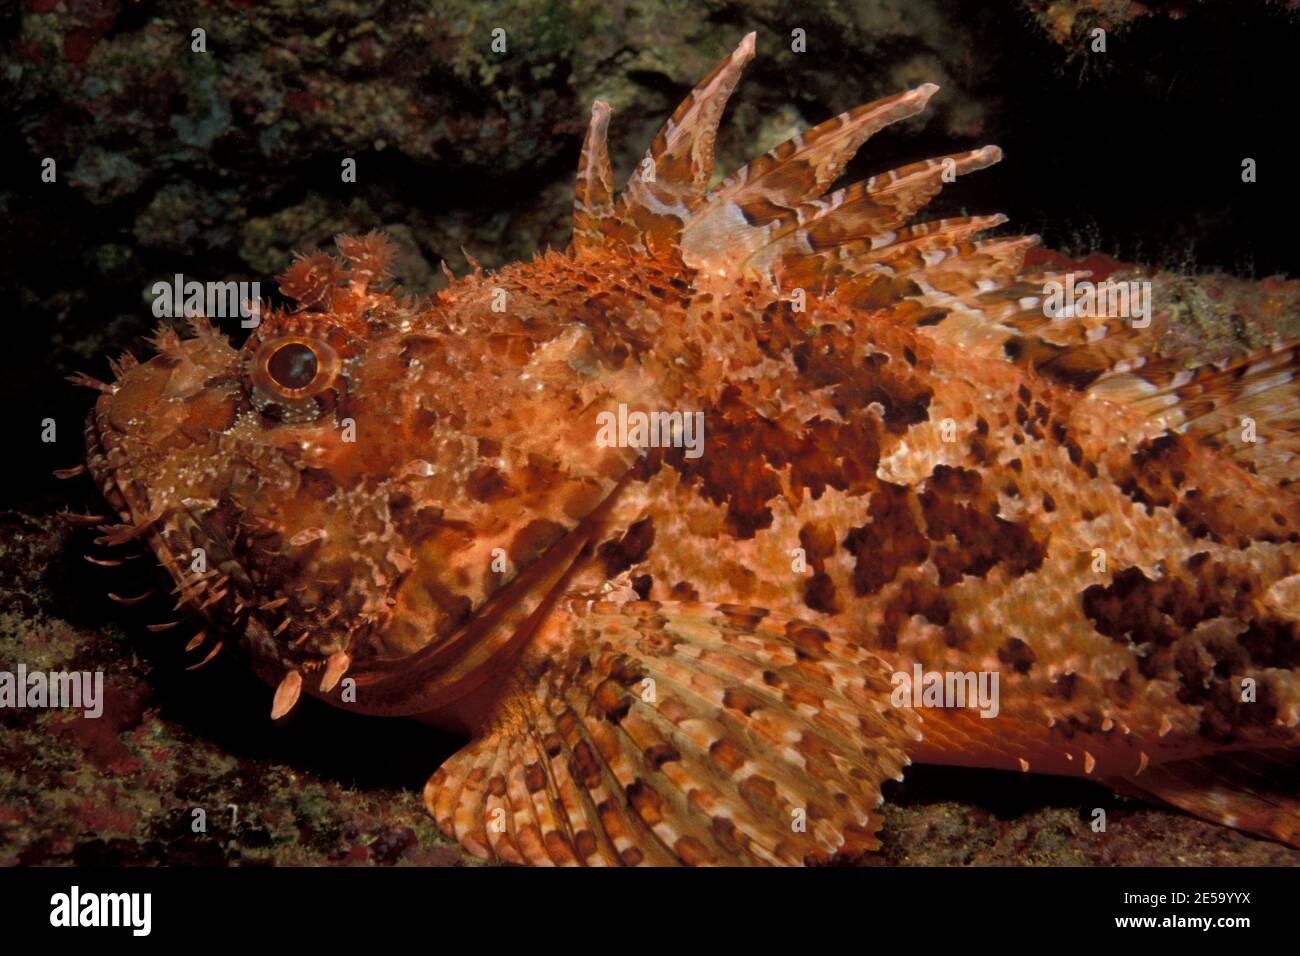 Scorpaena scrofa, red scorpionfish, Großer Roter Drachenkopf, Stock Photo